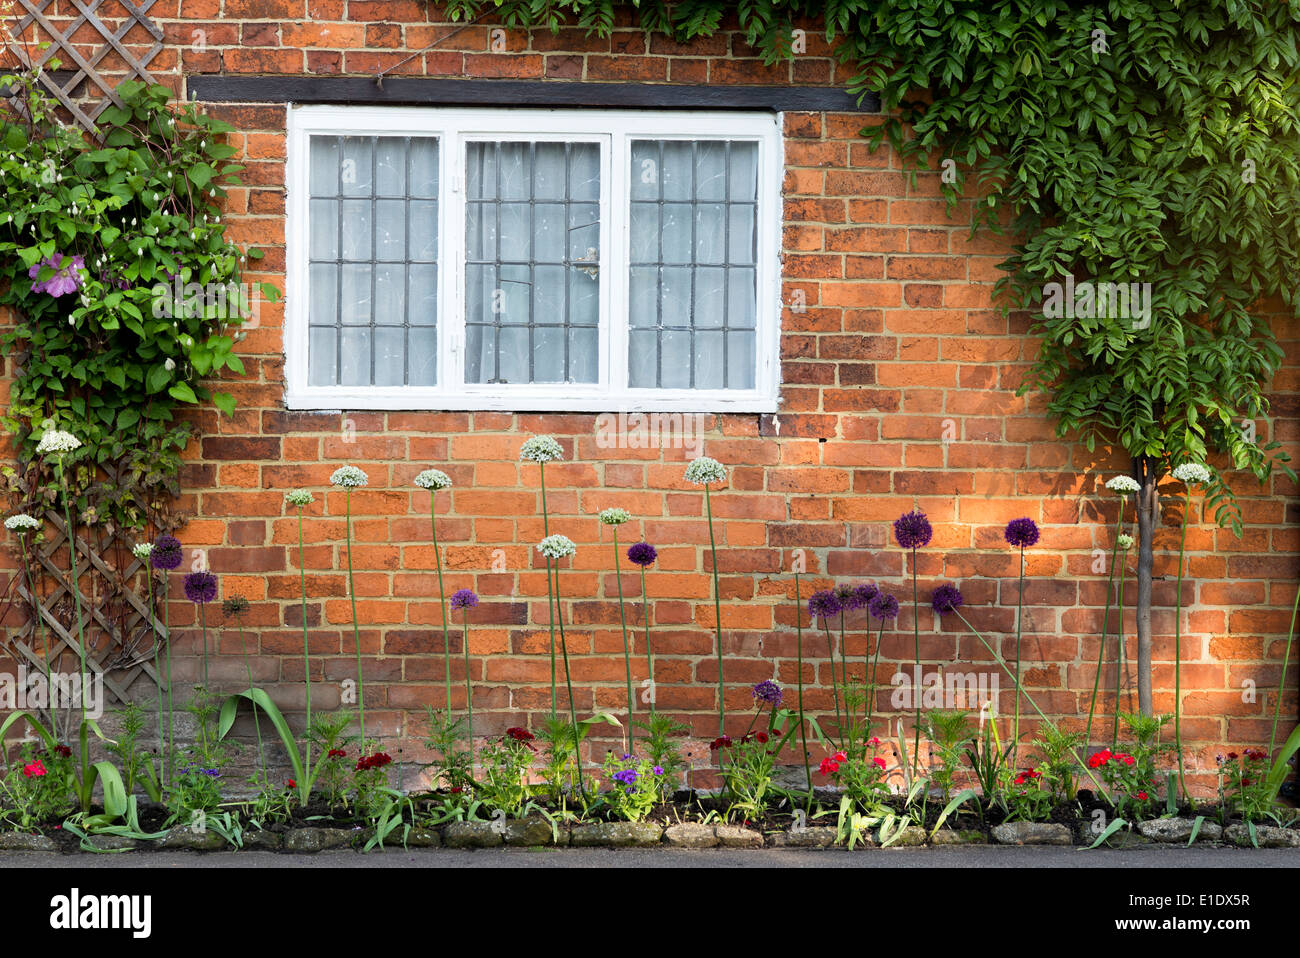 Allium devant un mur en brique rouge Cropredy cottage. Oxfordshire, Angleterre Banque D'Images